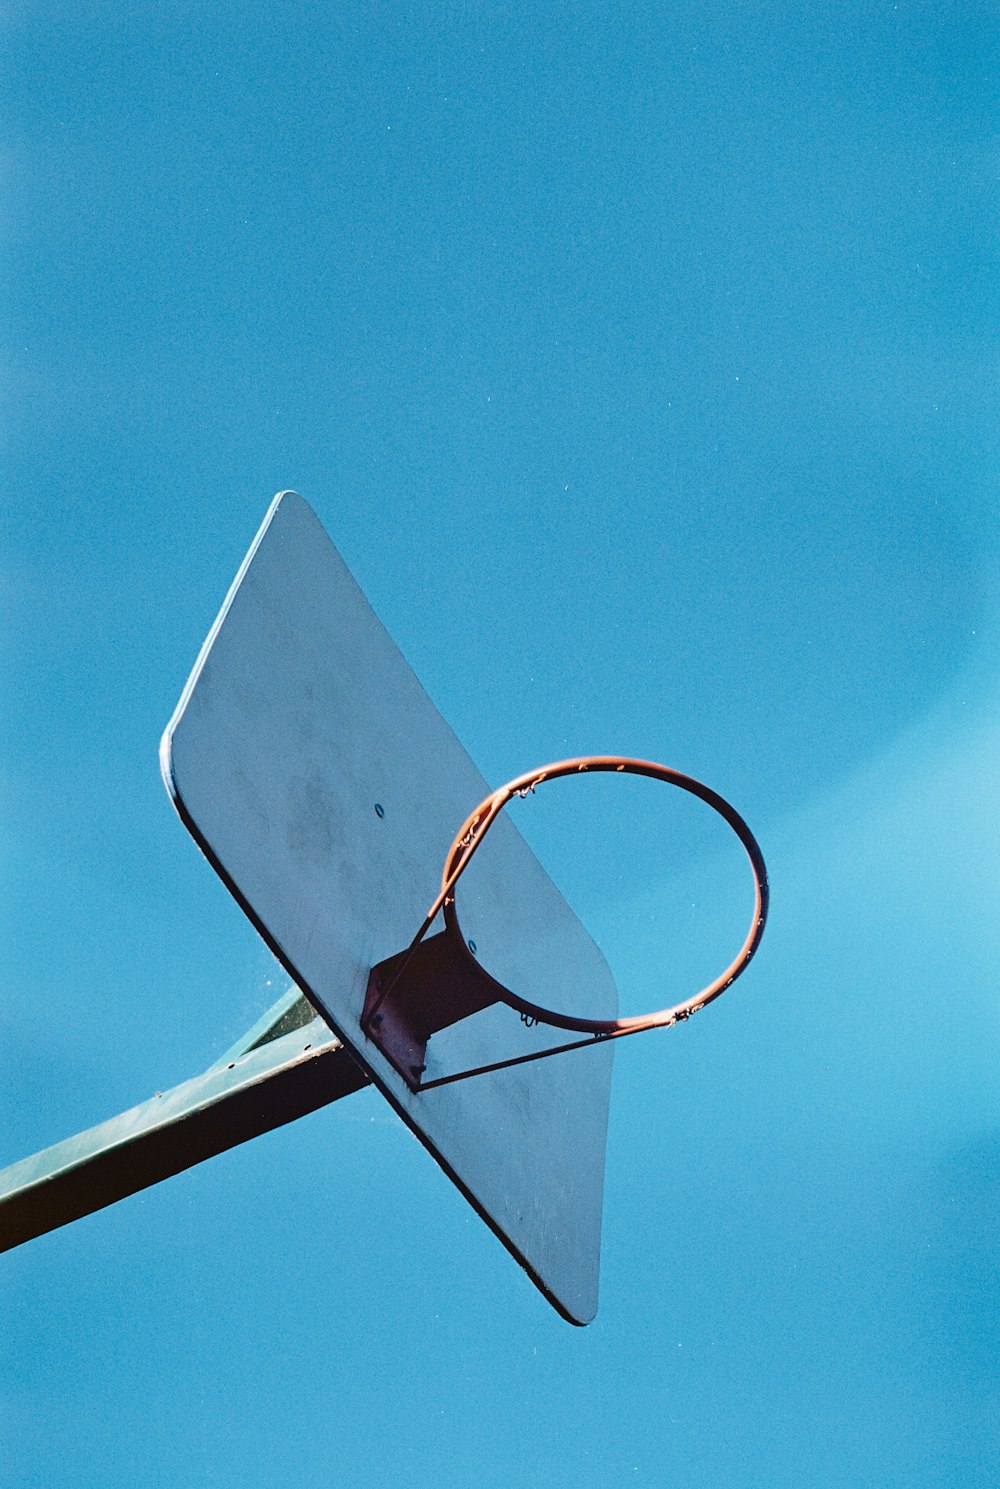 fotografia de baixo ângulo do aro de basquete